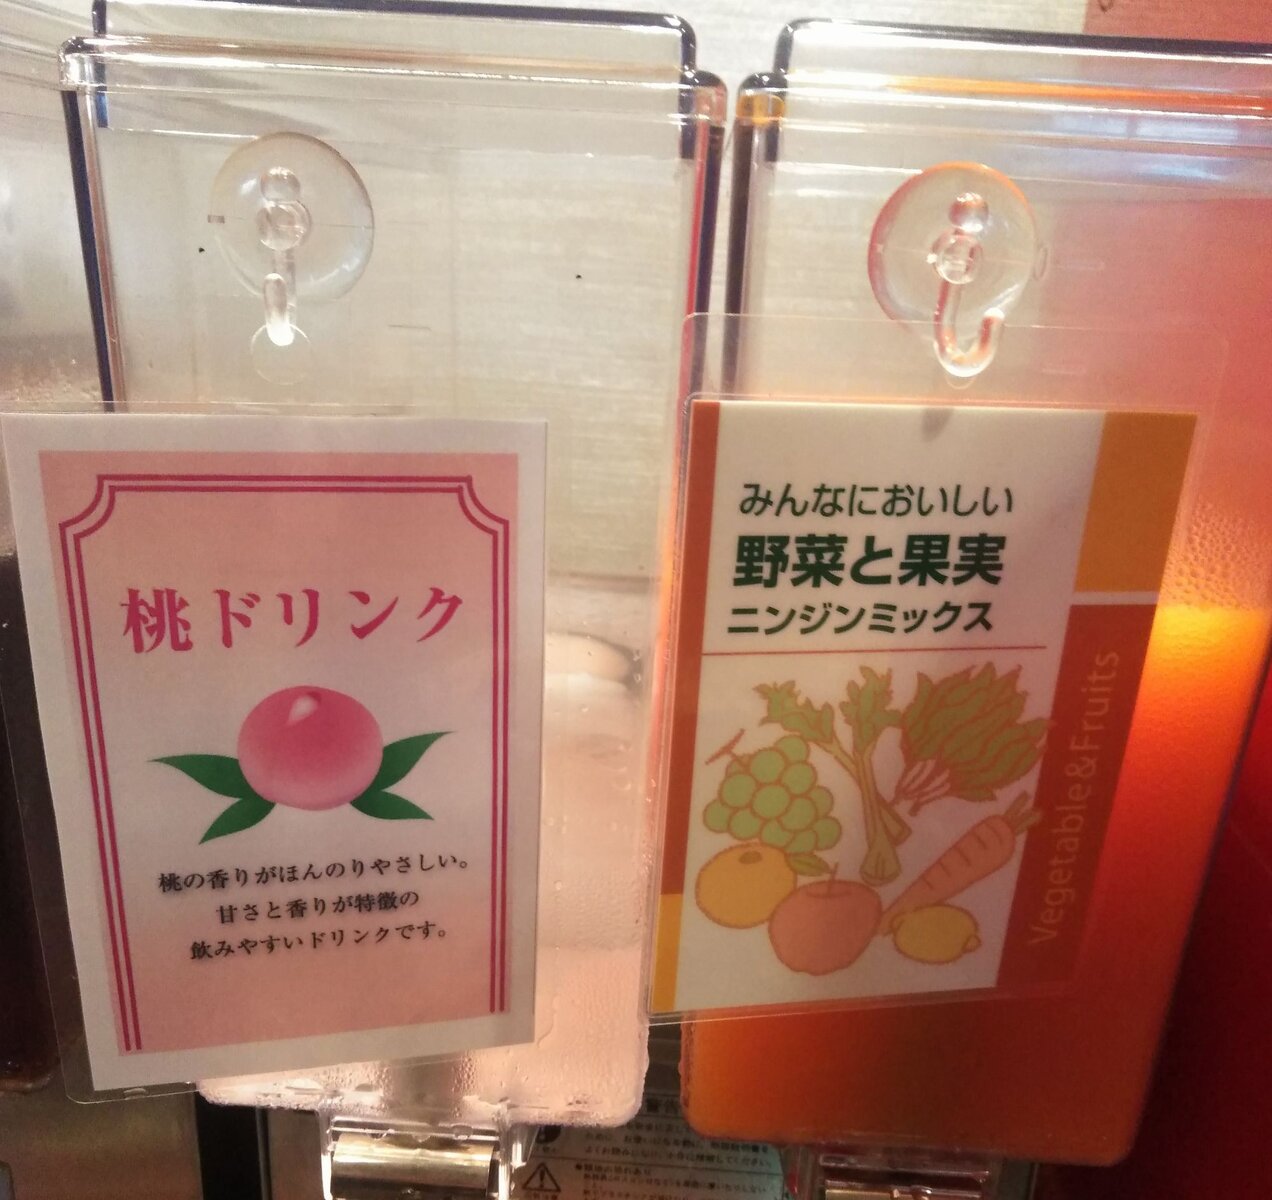 ９９円のメタボ餃子は必ず食うべき おかわりは永遠の輝き